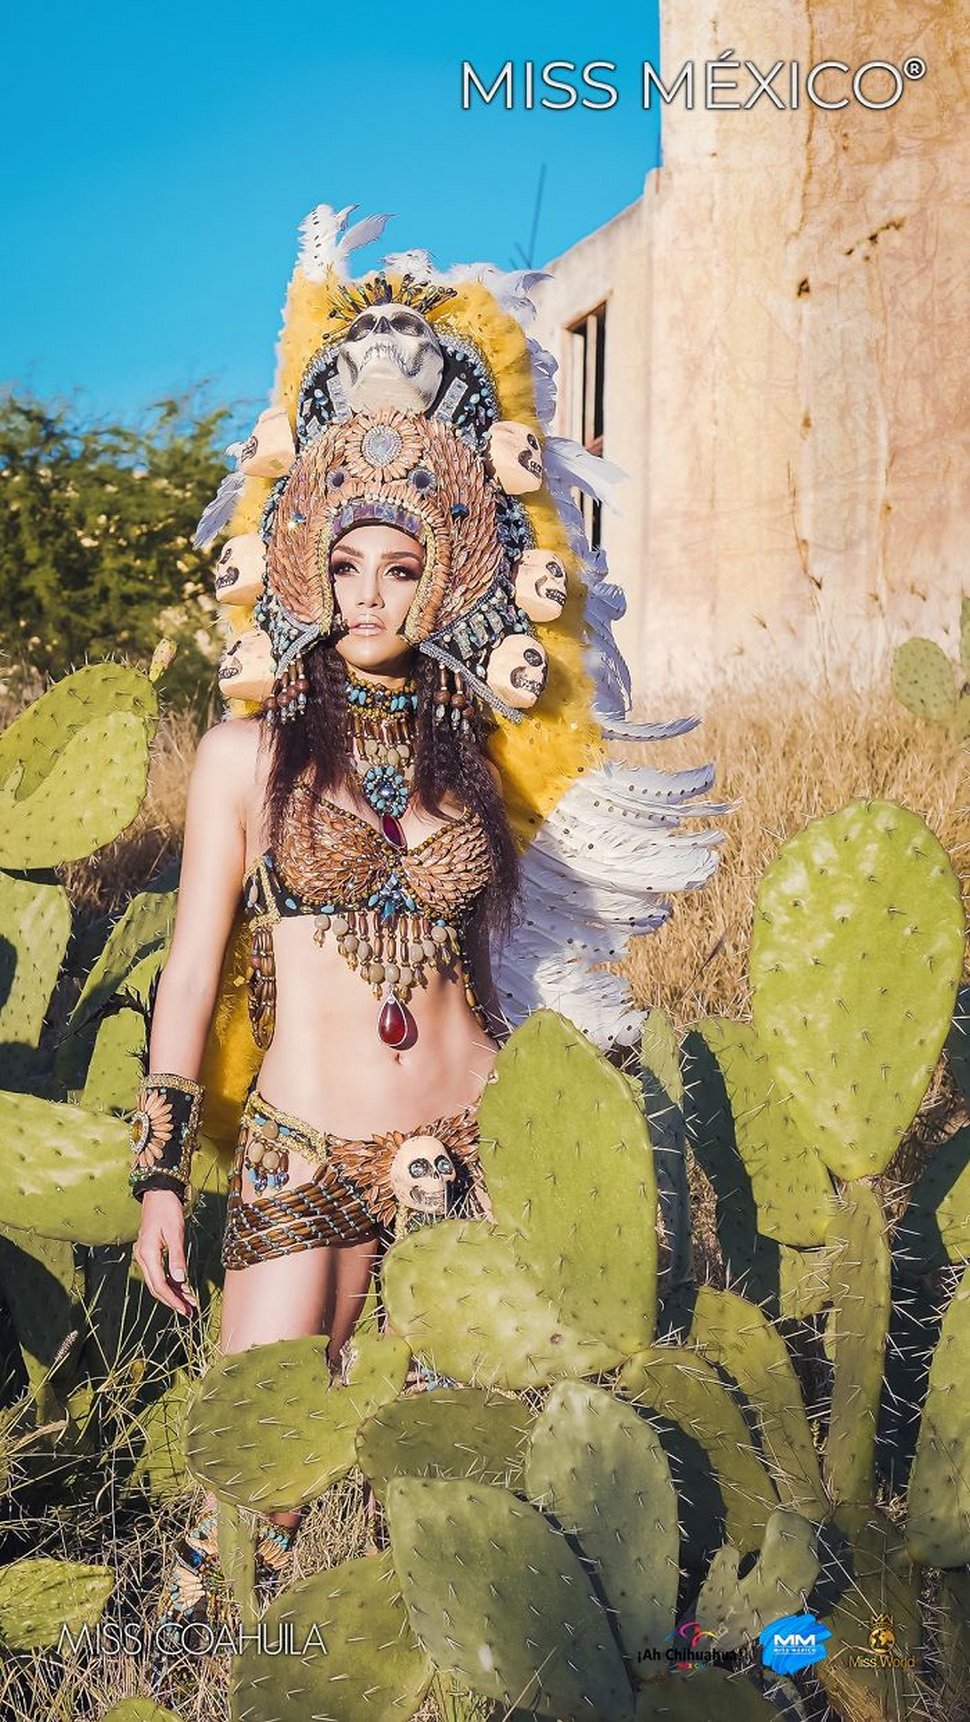 Les concurrentes de Miss Mexico 2020 s’affrontent vêtues de tenues traditionnelles et elles sont renversantes